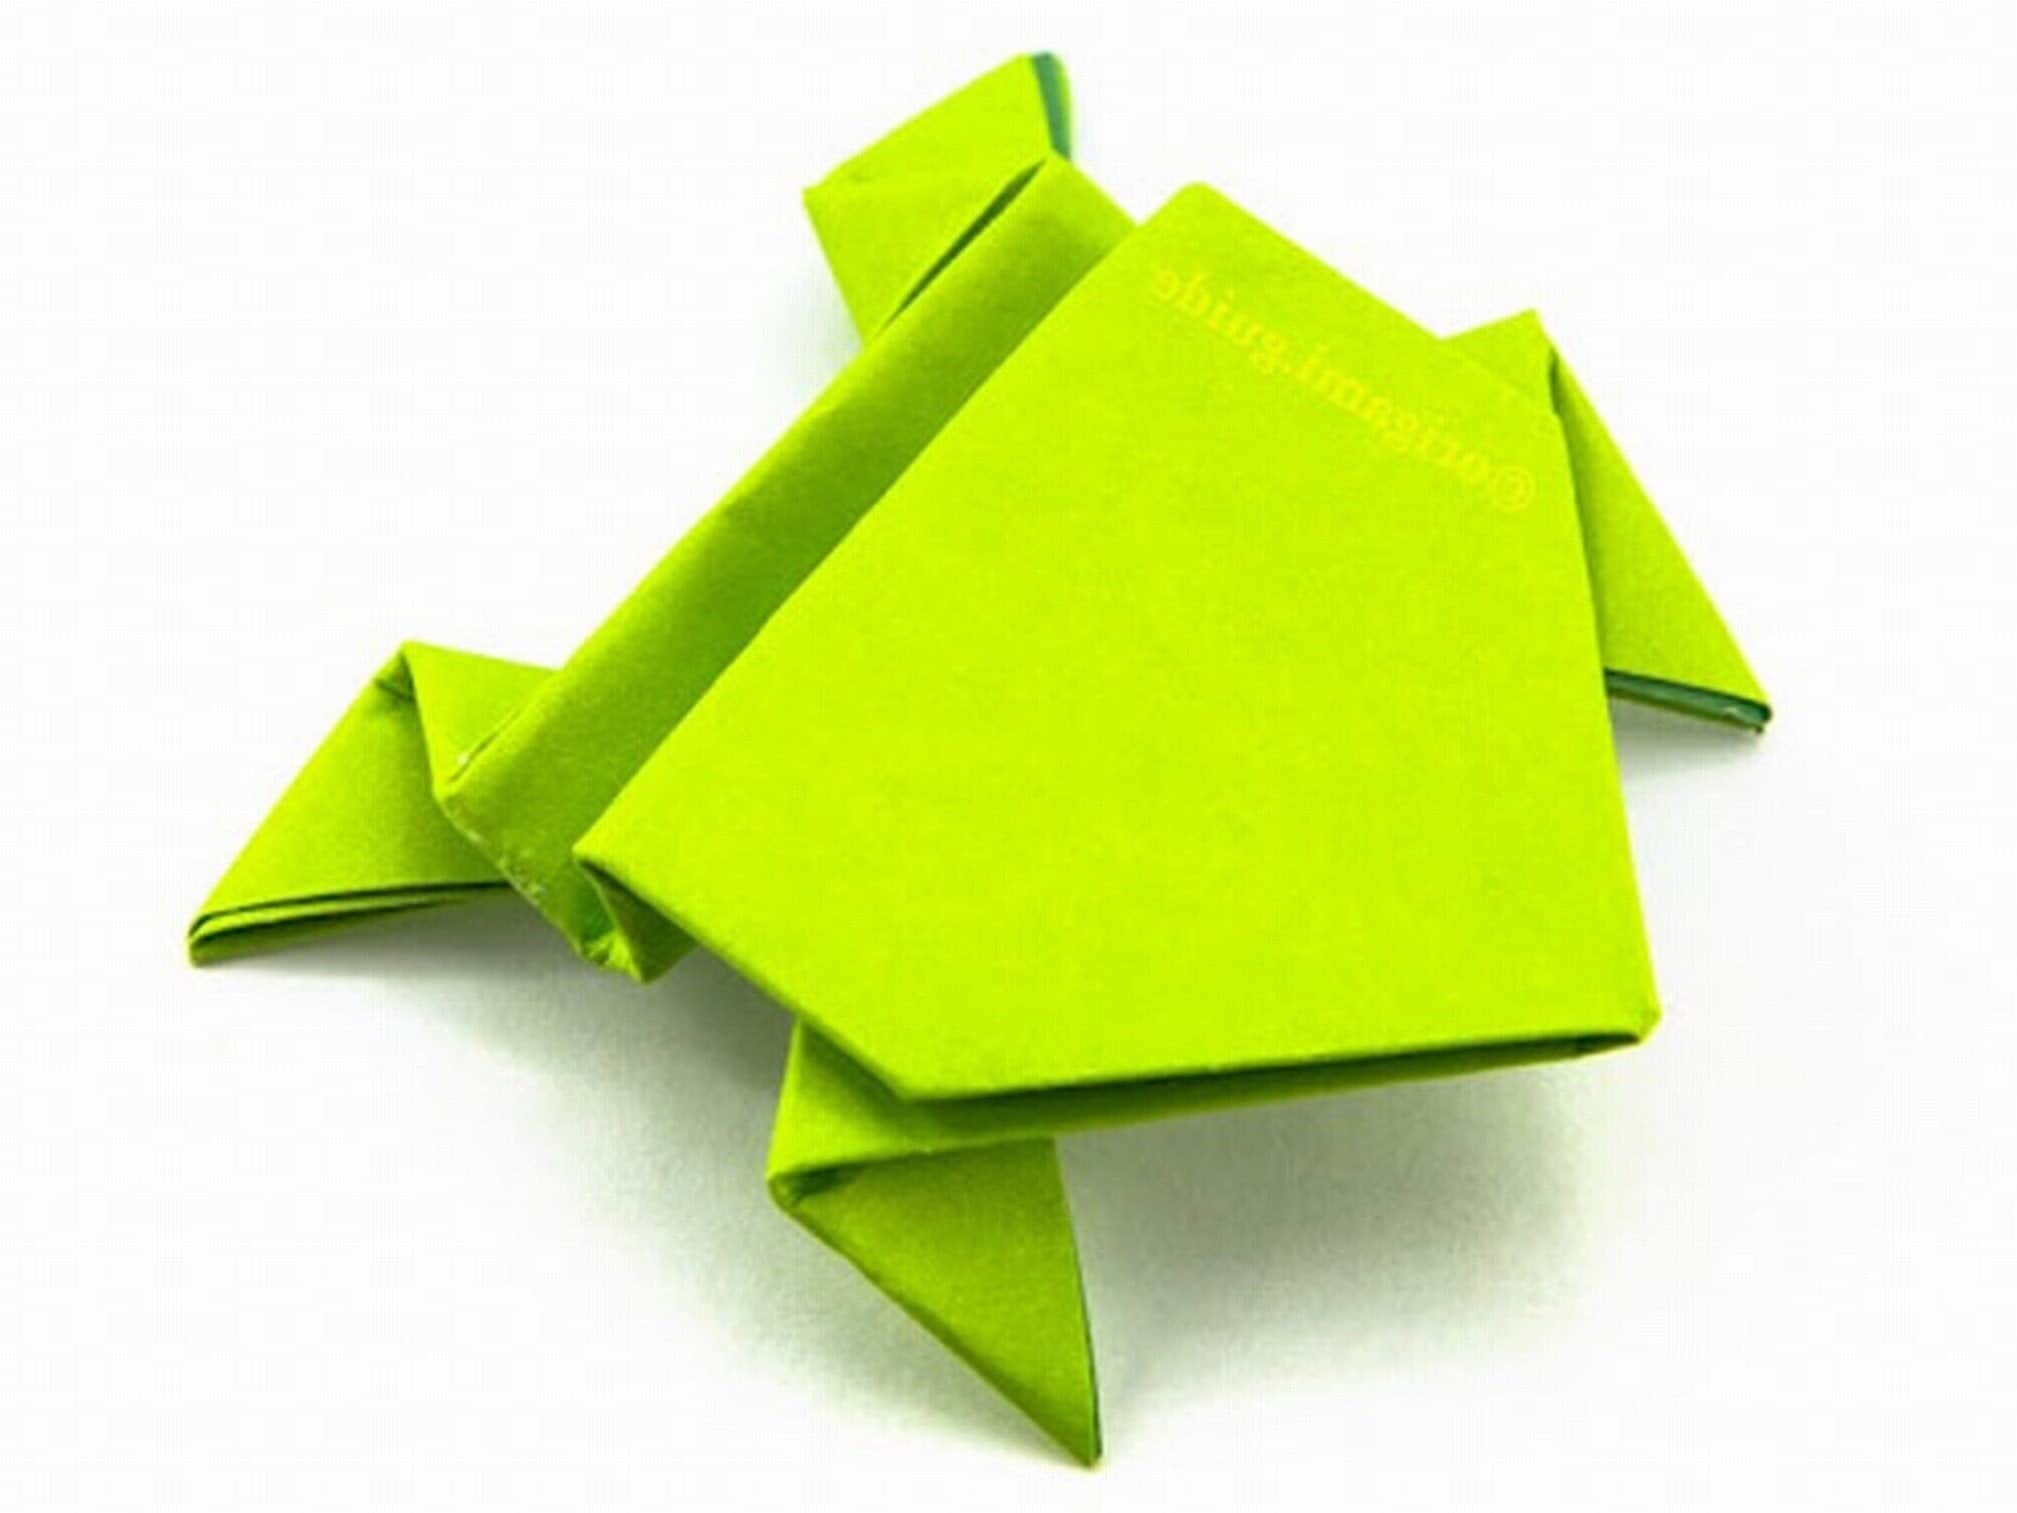 VINILO ADHESIVO TORNASOL CRICUT – Origami